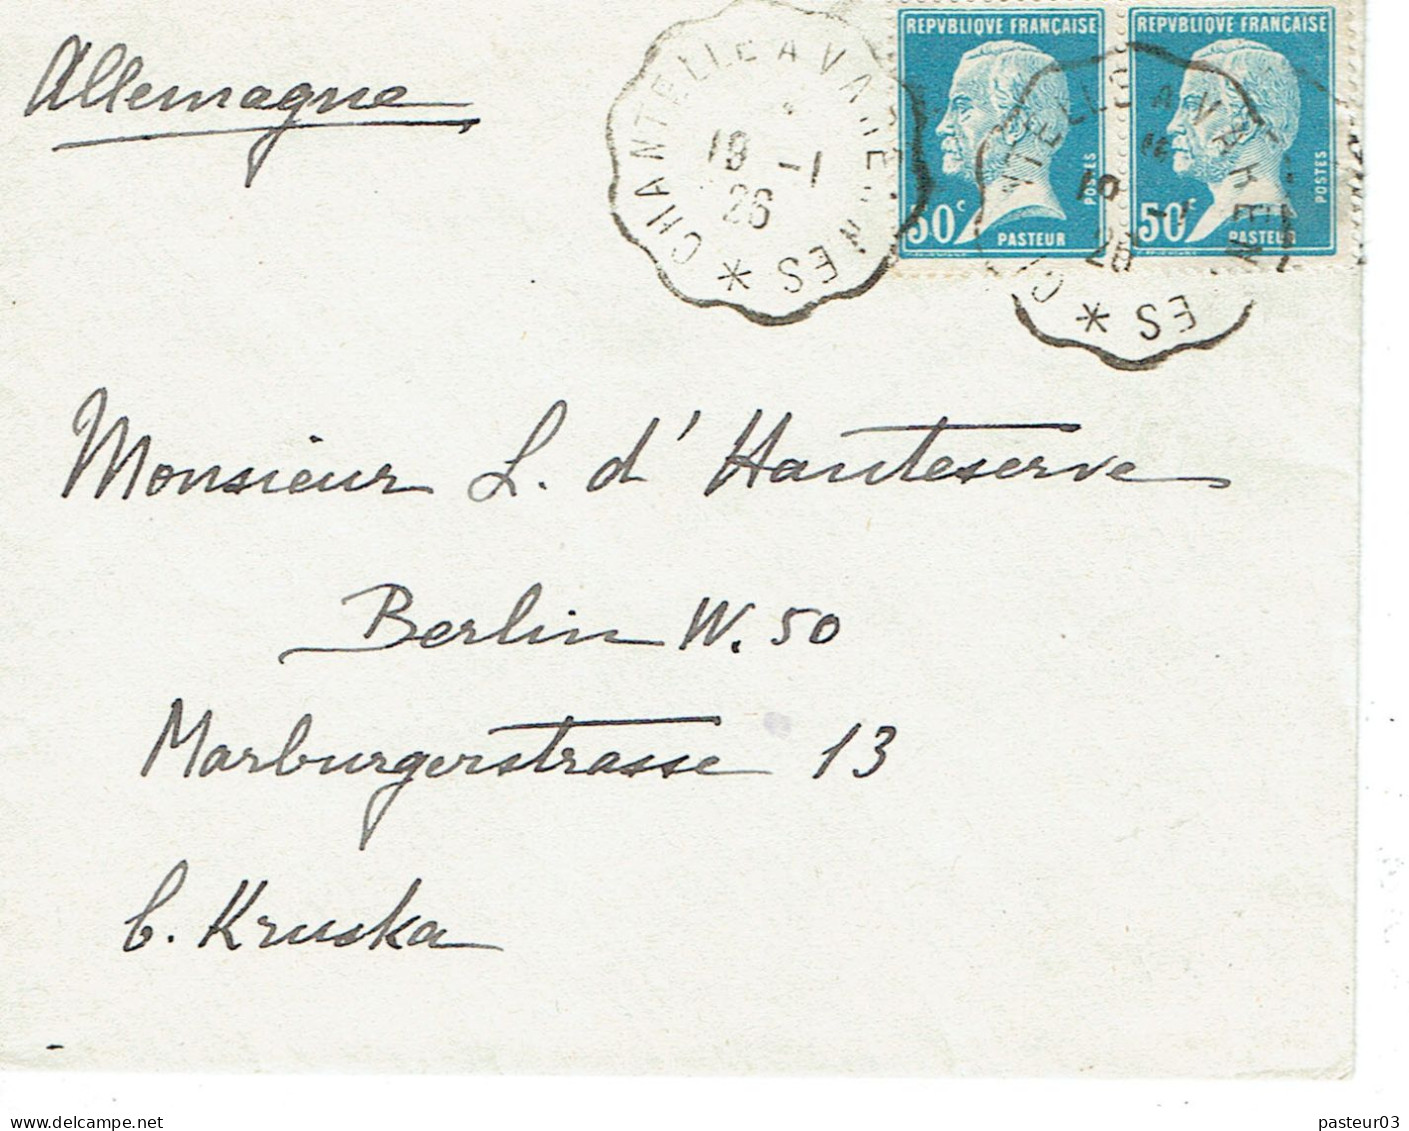 Tarifs Postaux Etranger Du 16-07-1925 (08) Pasteur N° 176 50 C. X 2 Cachet Ambulant Chantelle à Varennes (03) Lettre 20 - 1922-26 Pasteur